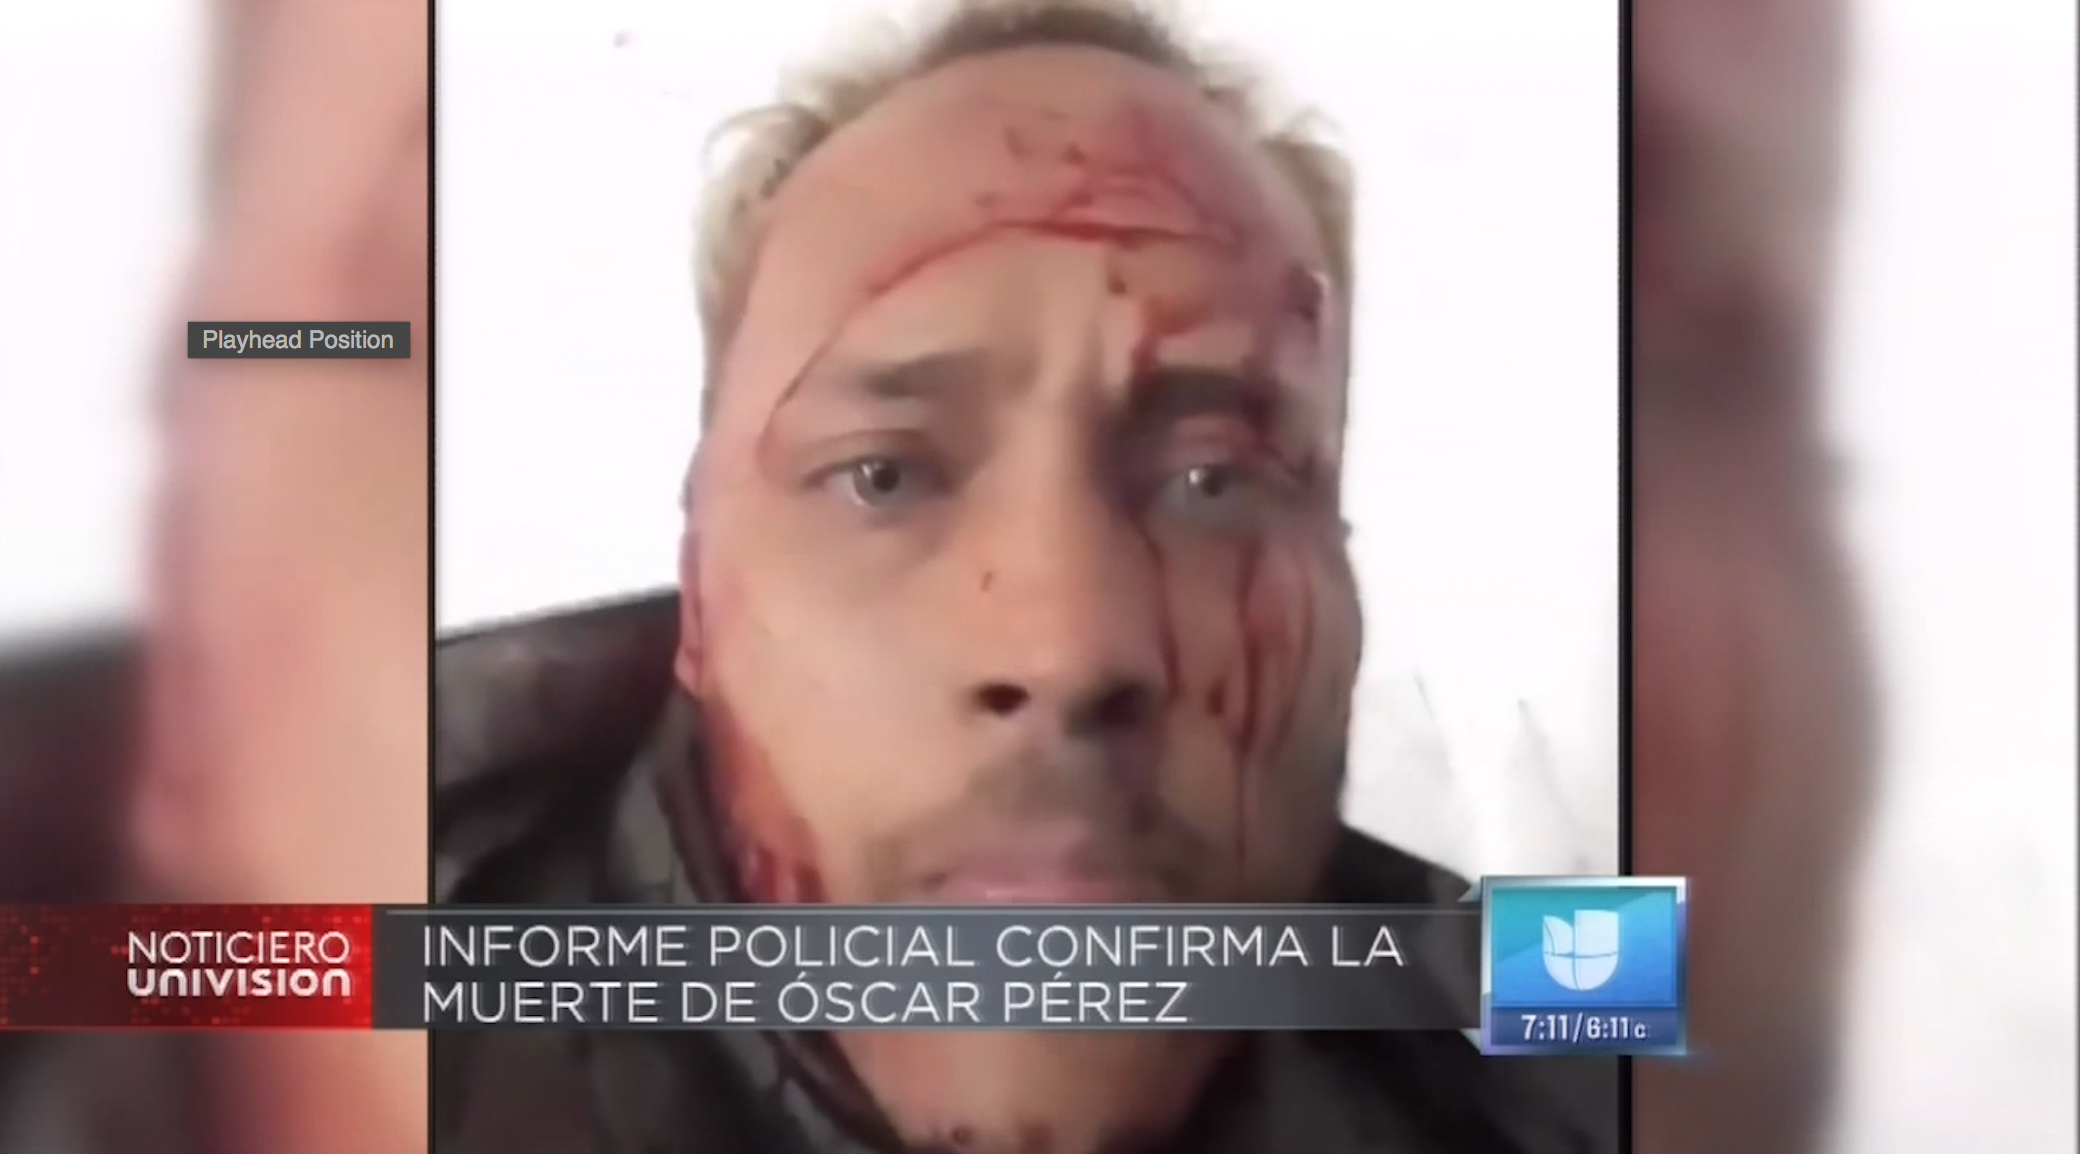 Informe Policial Confirma La Muerte De Oscar Perez